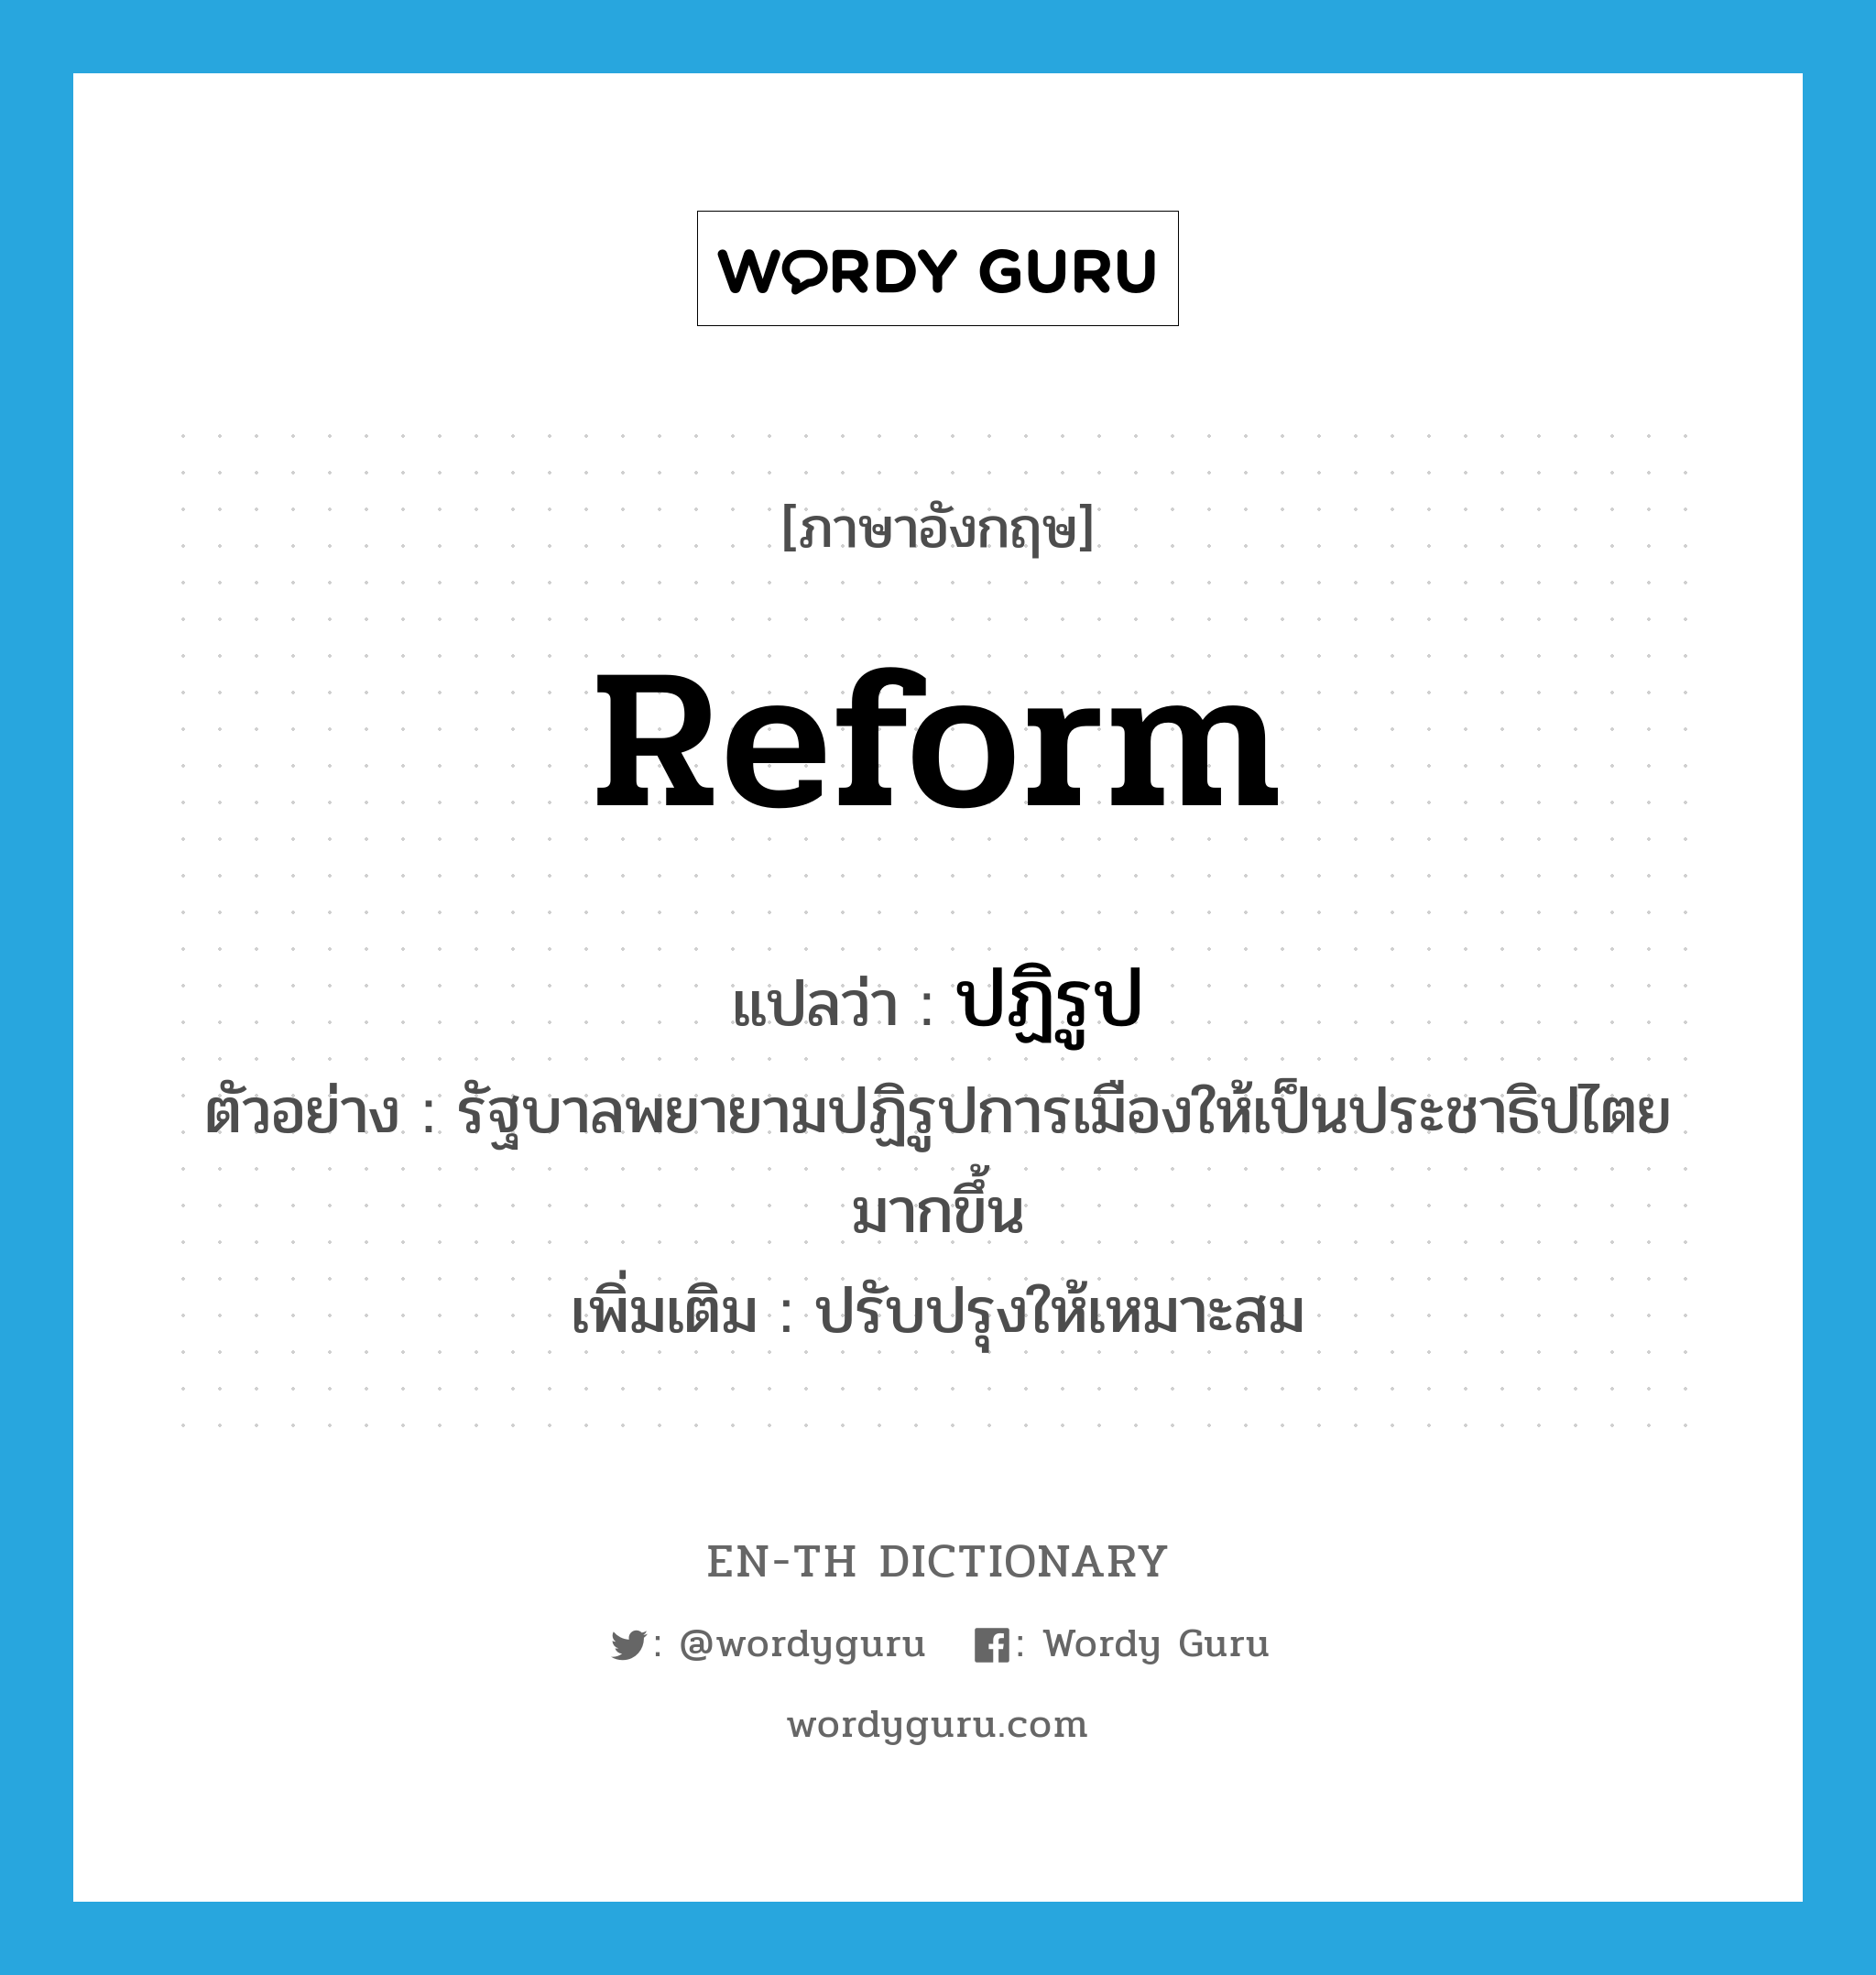 reform แปลว่า?, คำศัพท์ภาษาอังกฤษ reform แปลว่า ปฏิรูป ประเภท V ตัวอย่าง รัฐบาลพยายามปฏิรูปการเมืองให้เป็นประชาธิปไตยมากขึ้น เพิ่มเติม ปรับปรุงให้เหมาะสม หมวด V